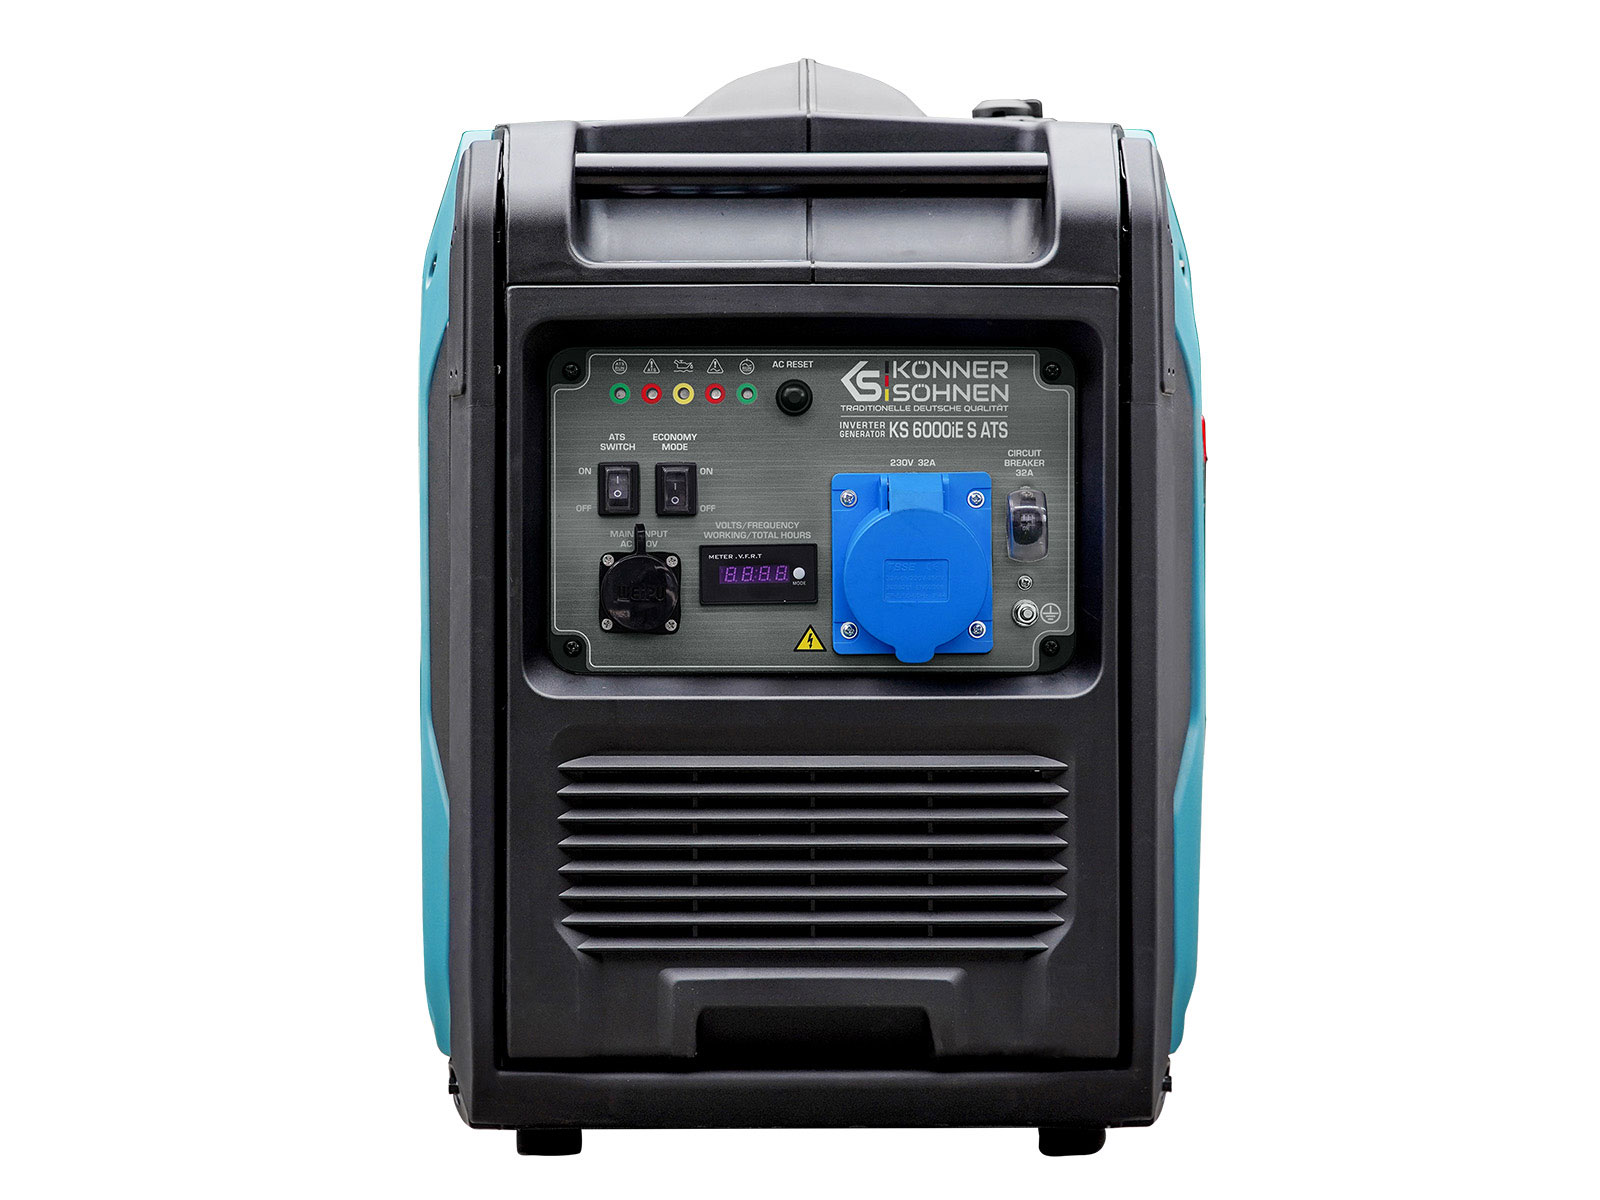 Inverter generator KS 6000iE S ATS Version 2